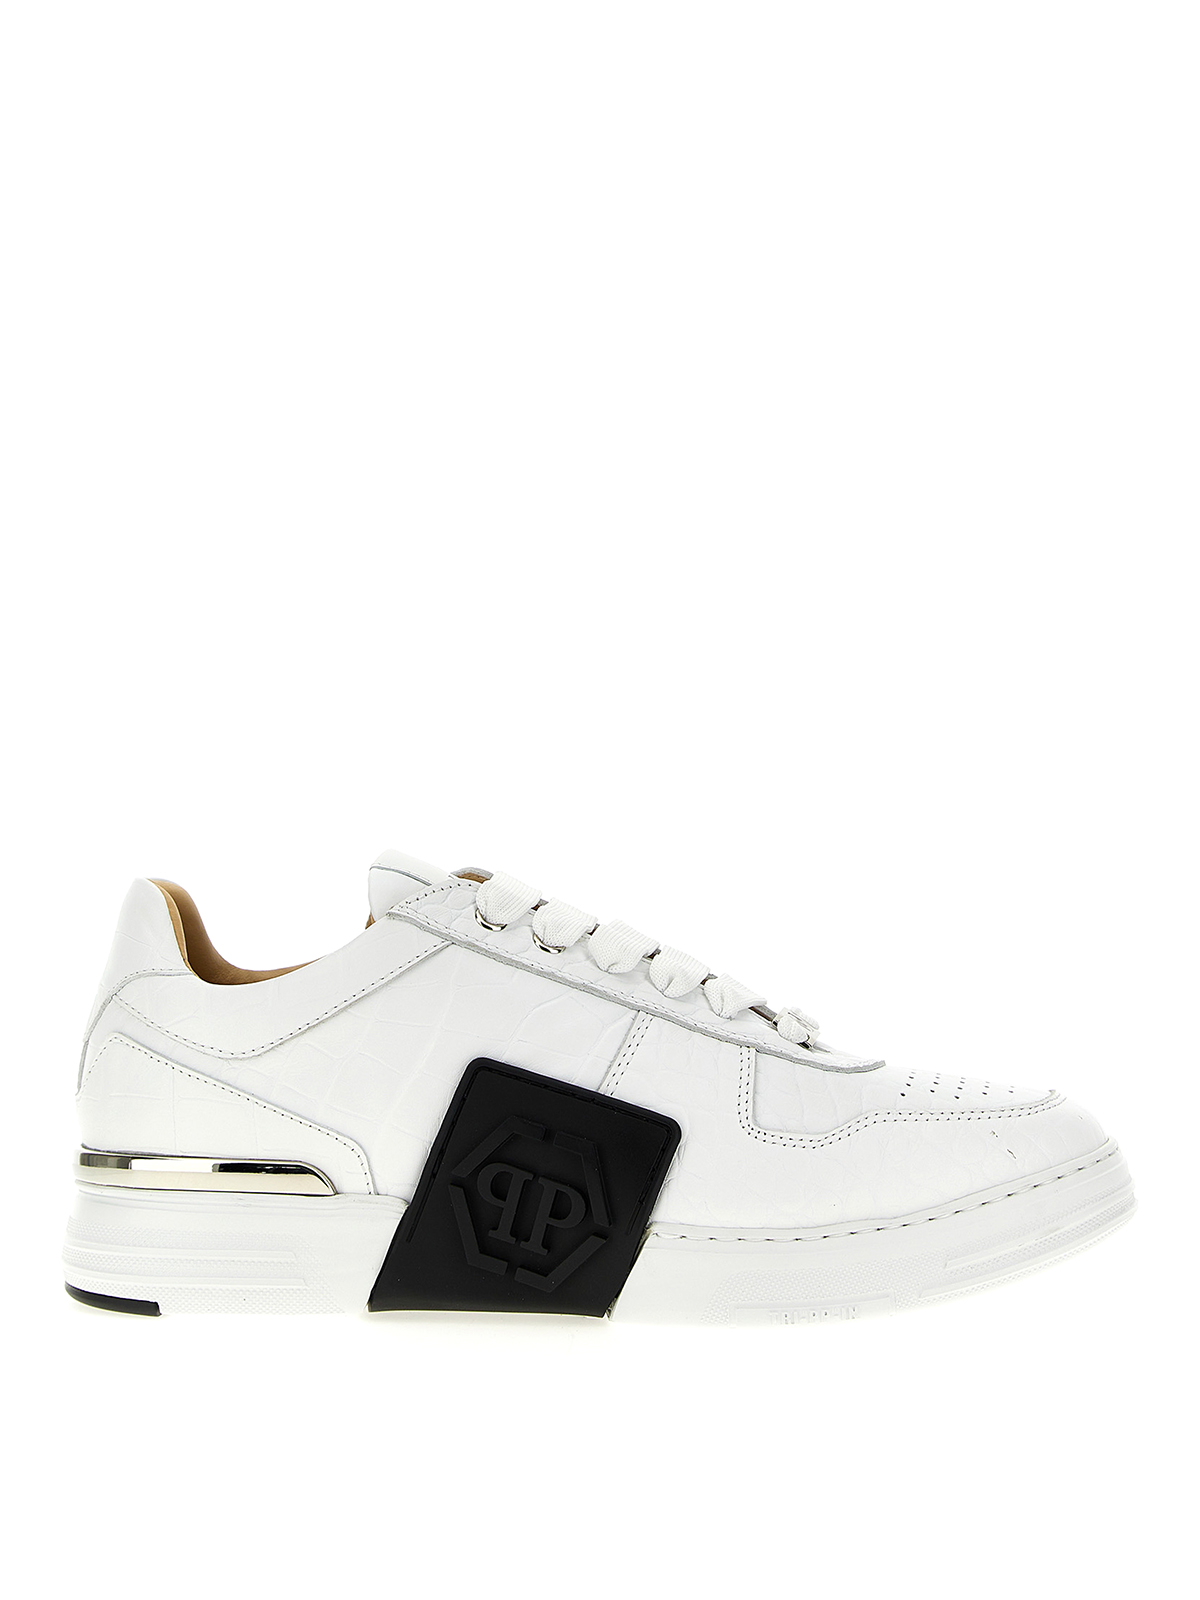 Philipp Plein Hexagon Sneakers In White